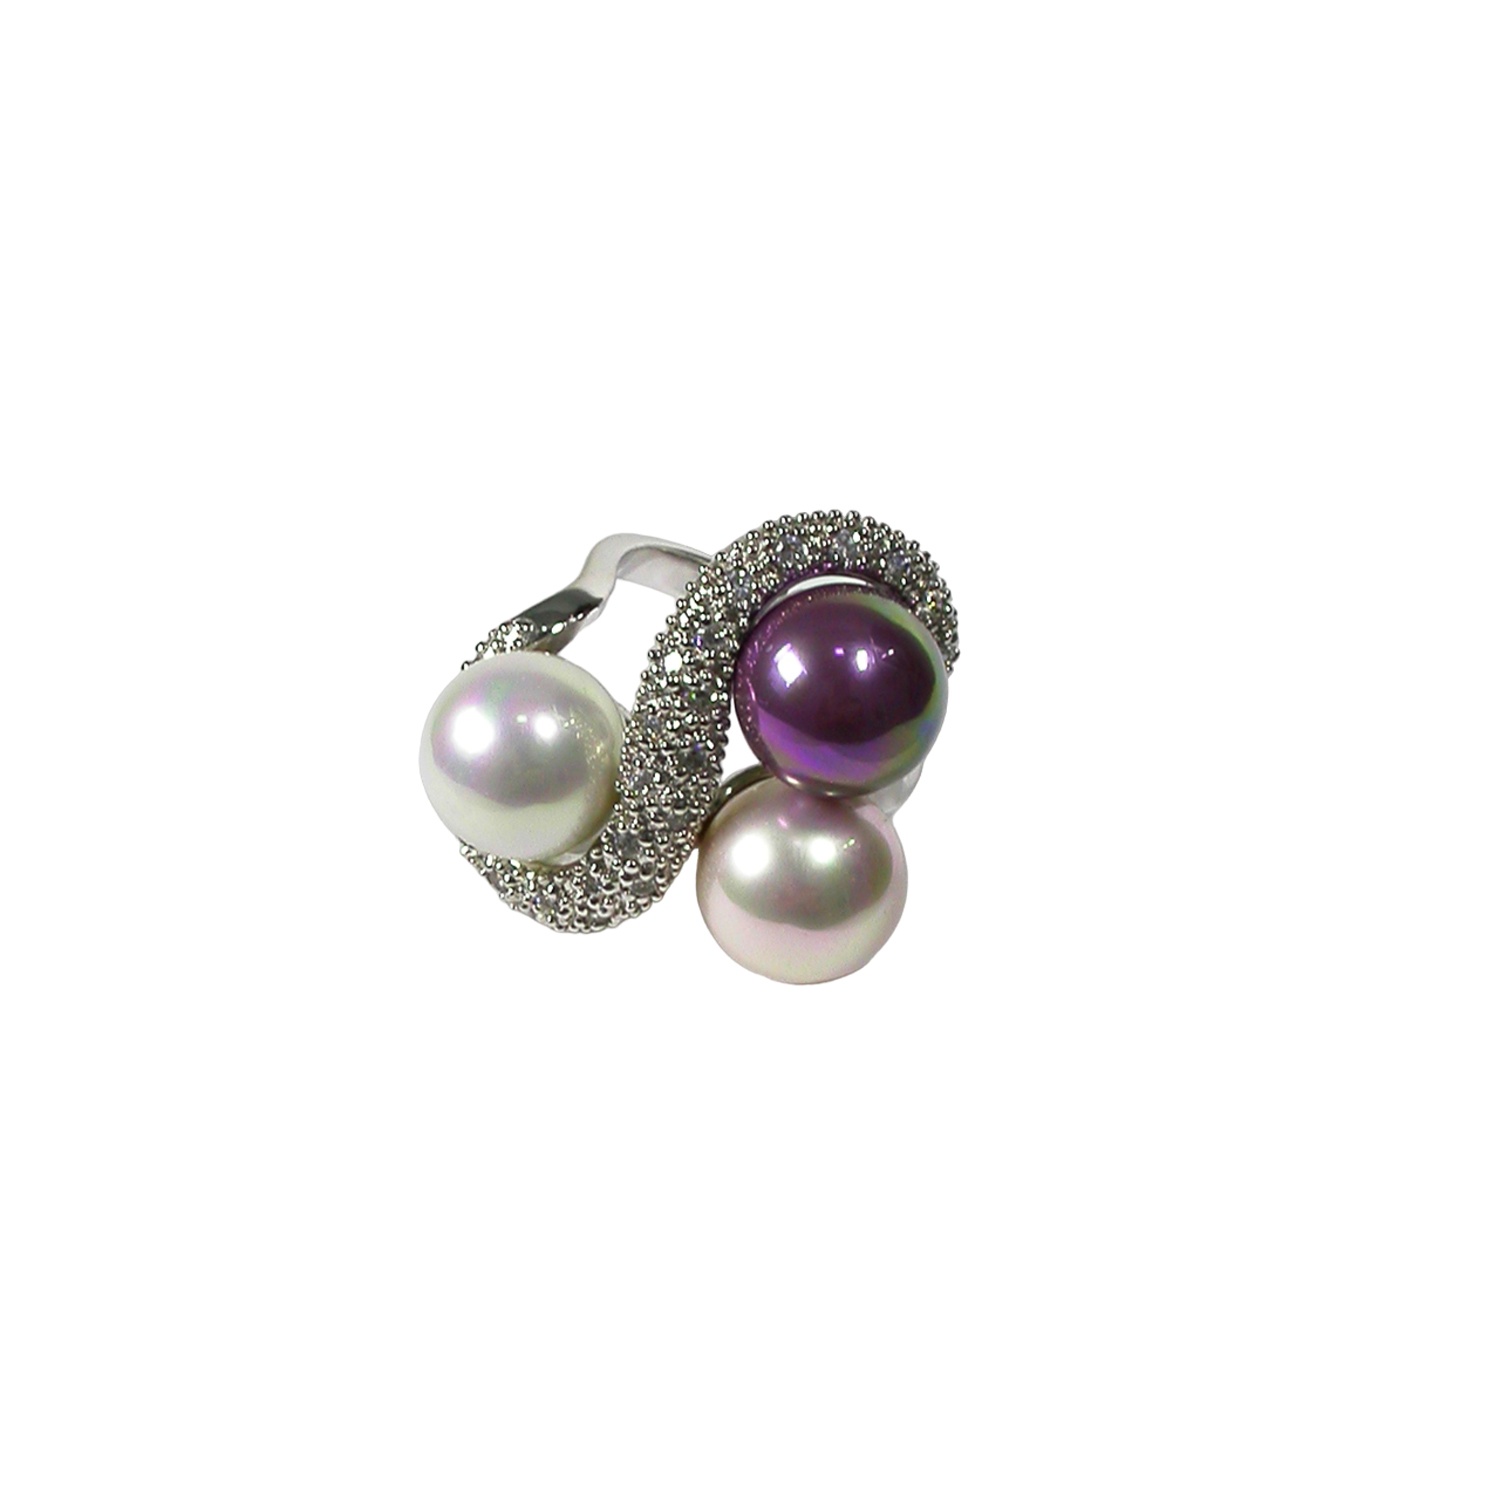 Silberrring mit dreifarbigen Perlen